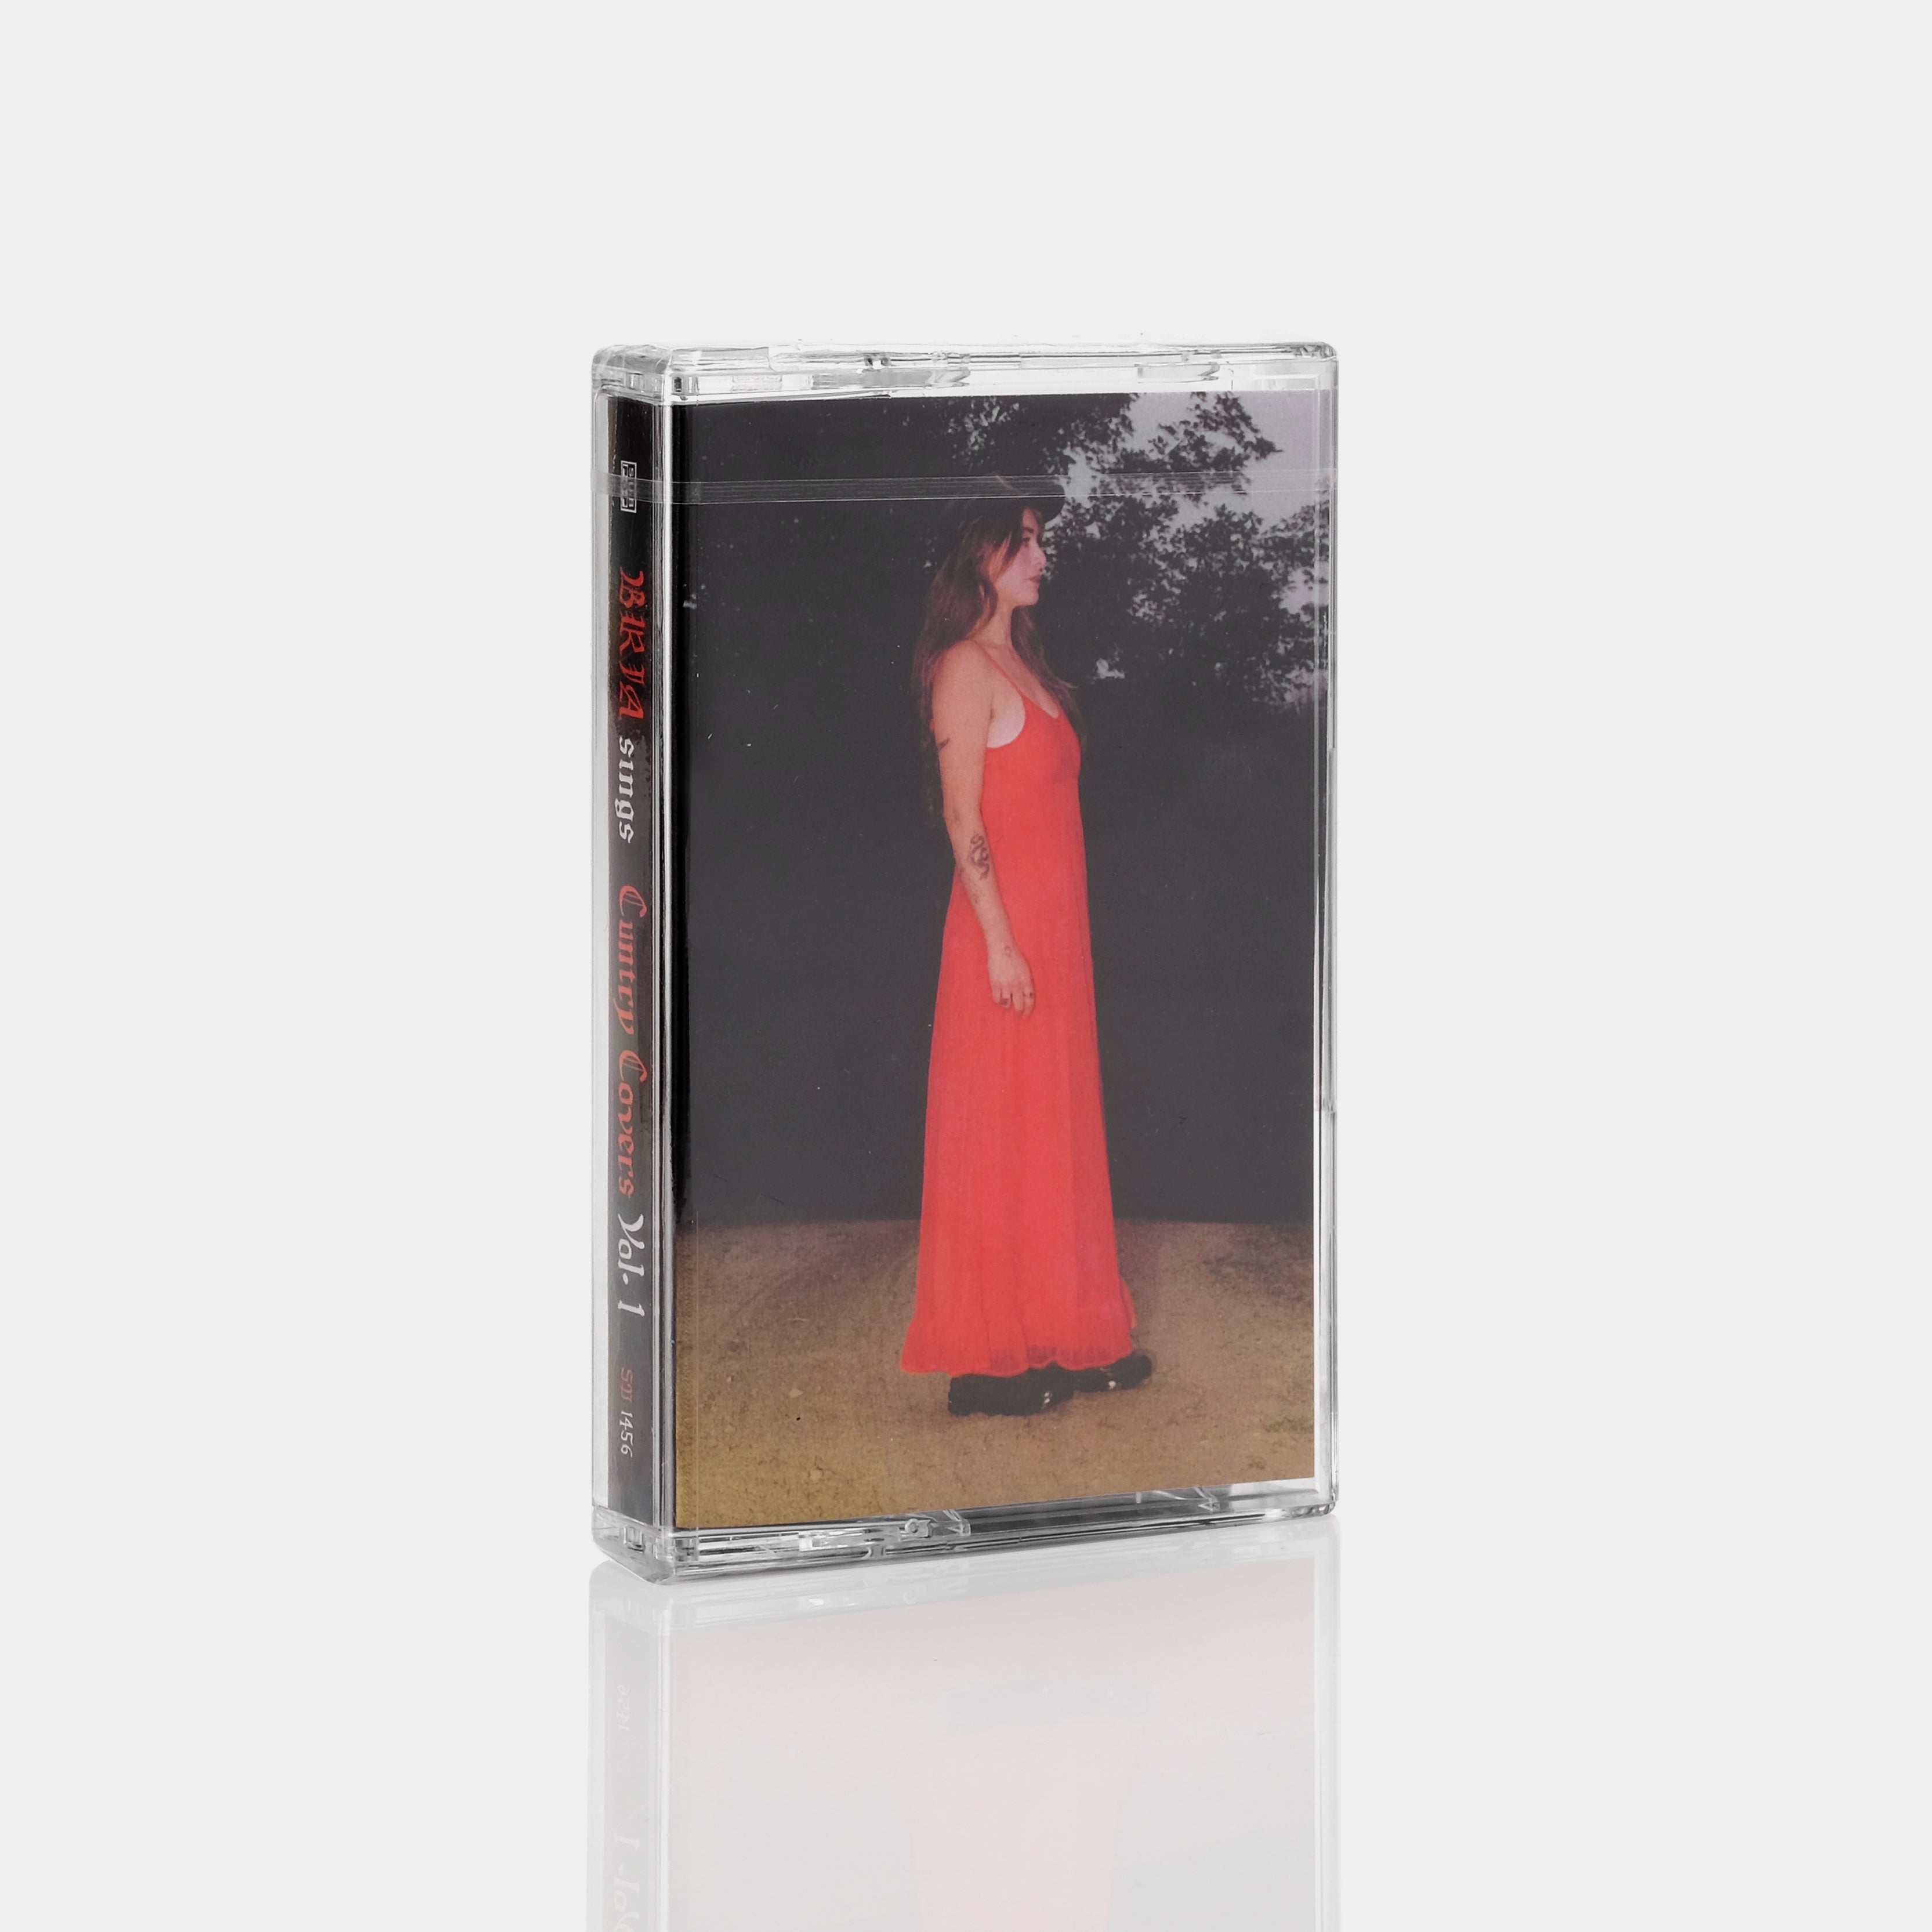 Bria - Cuntry Covers Vol. 1 Cassette Tape